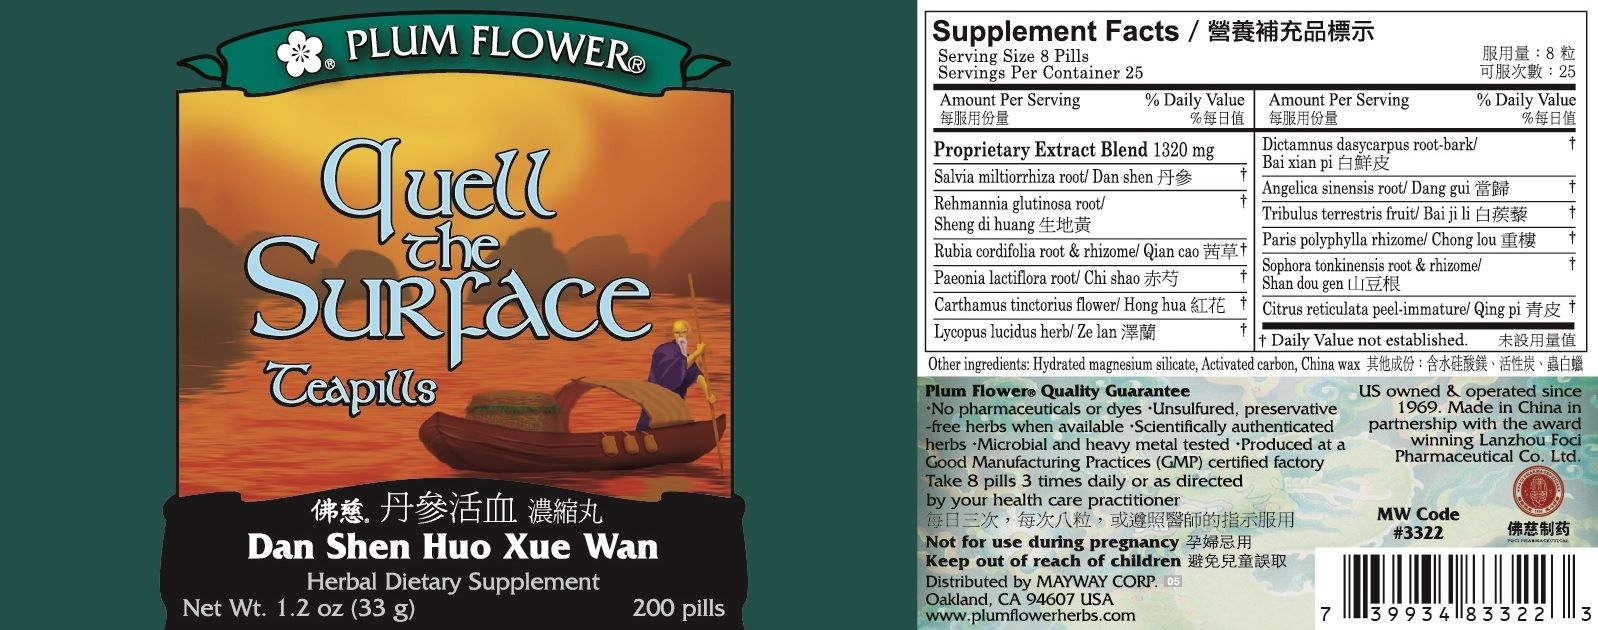 Quell the Surface Teapills (Dan Shen Huo Xue Wan)-Plum Flower-Pine Street Clinic